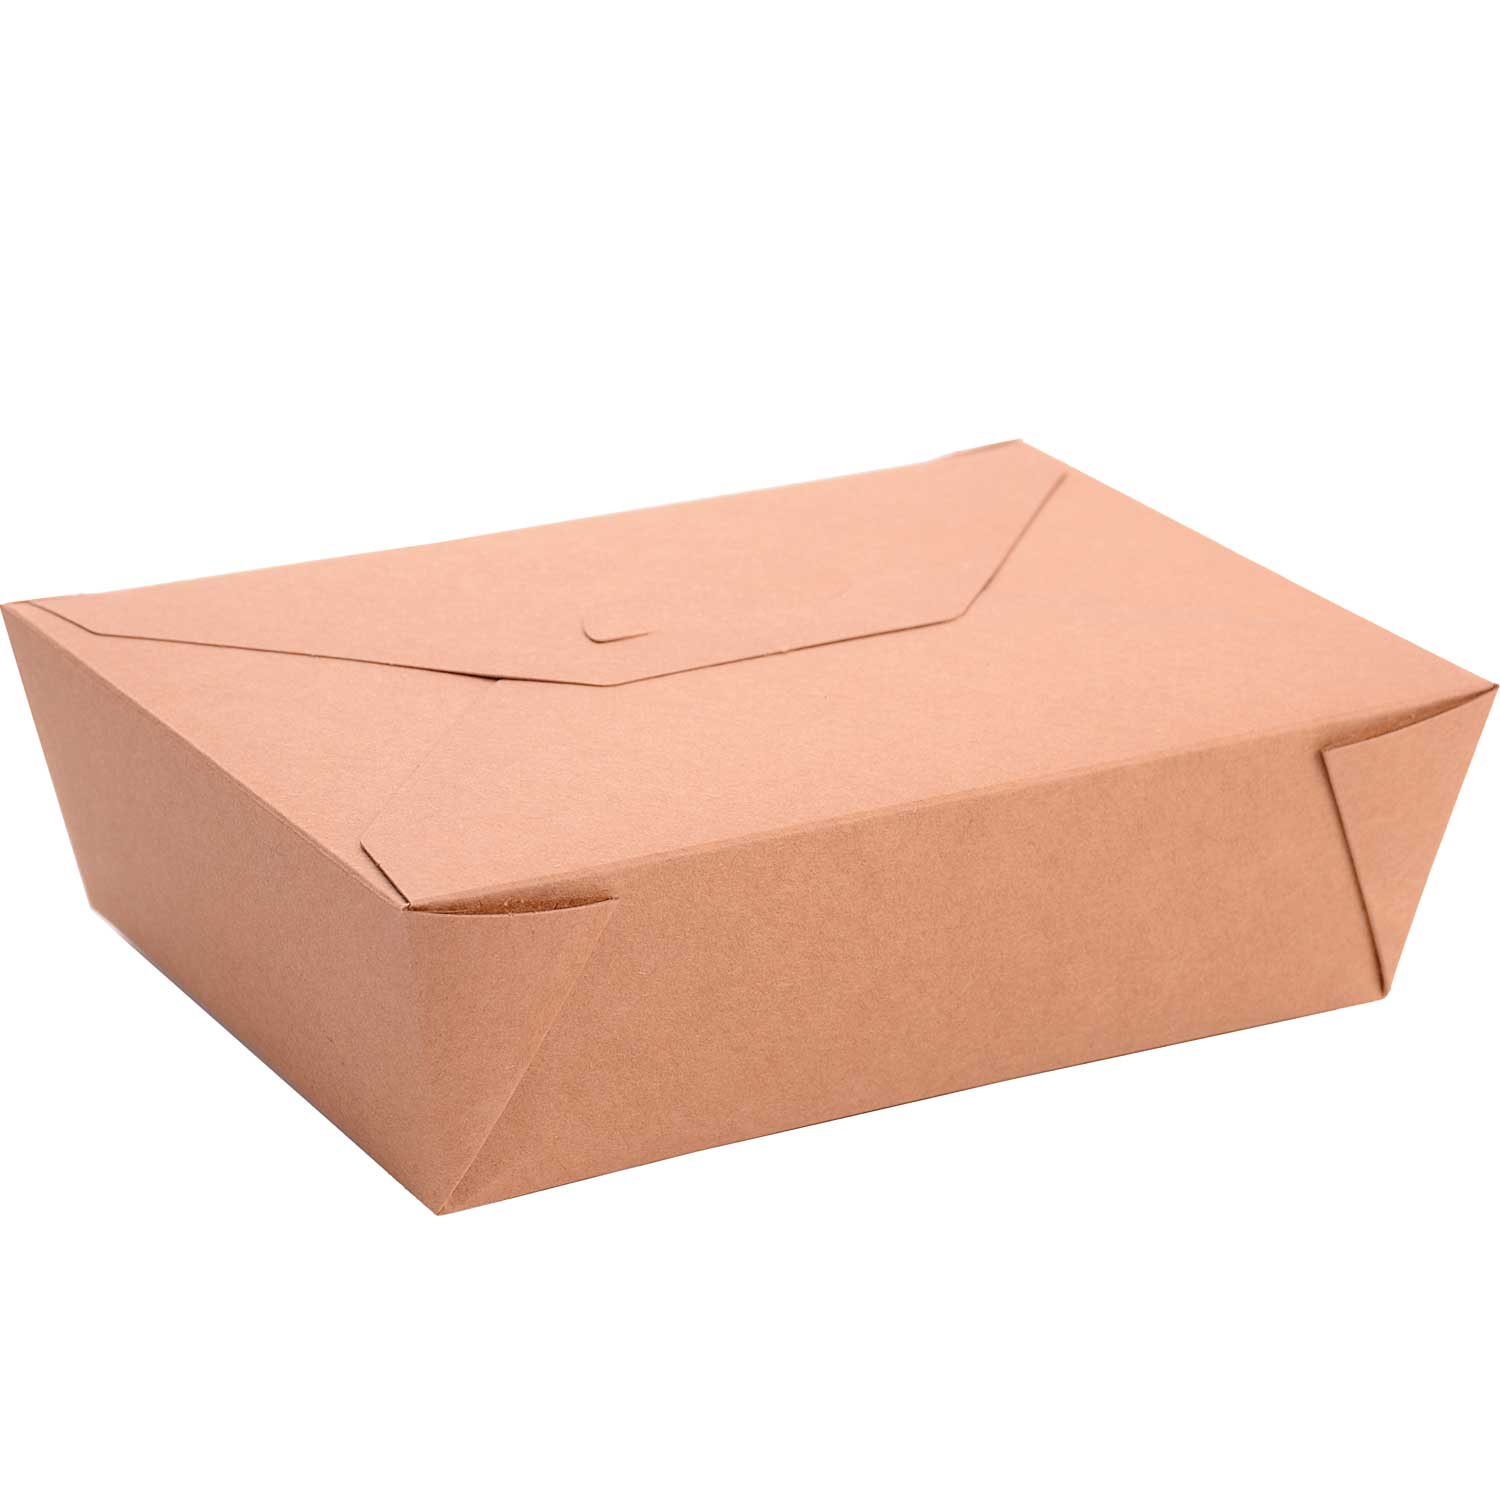 Foldable takeaway box. 68 oz (200)